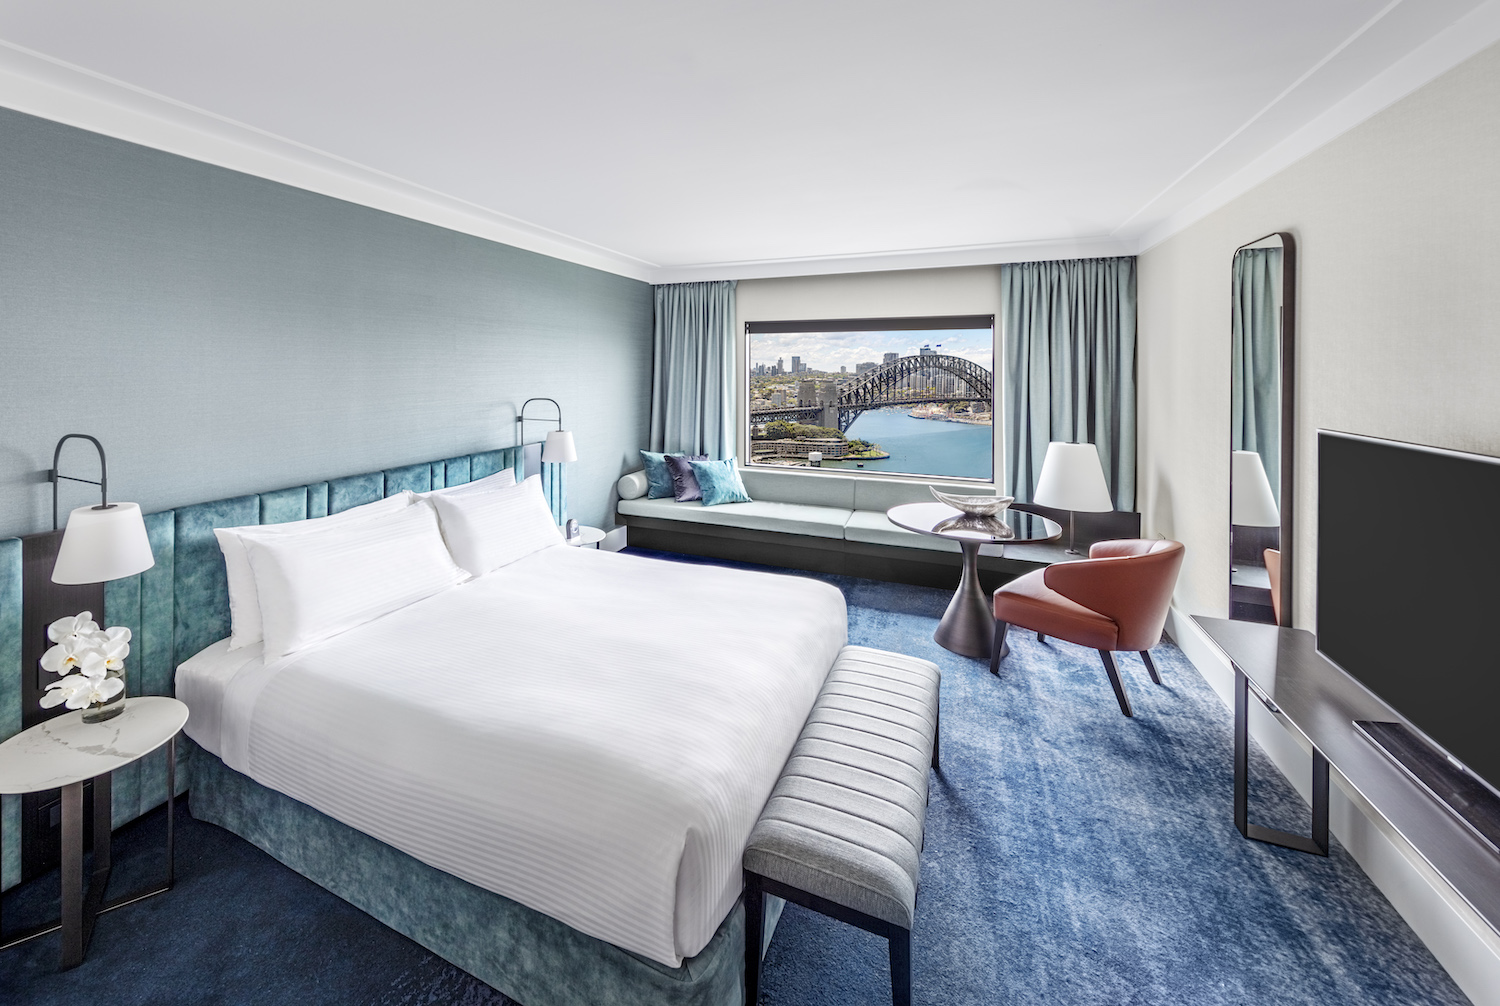 Luxury hotel InterContinental Sydney unveils redesign